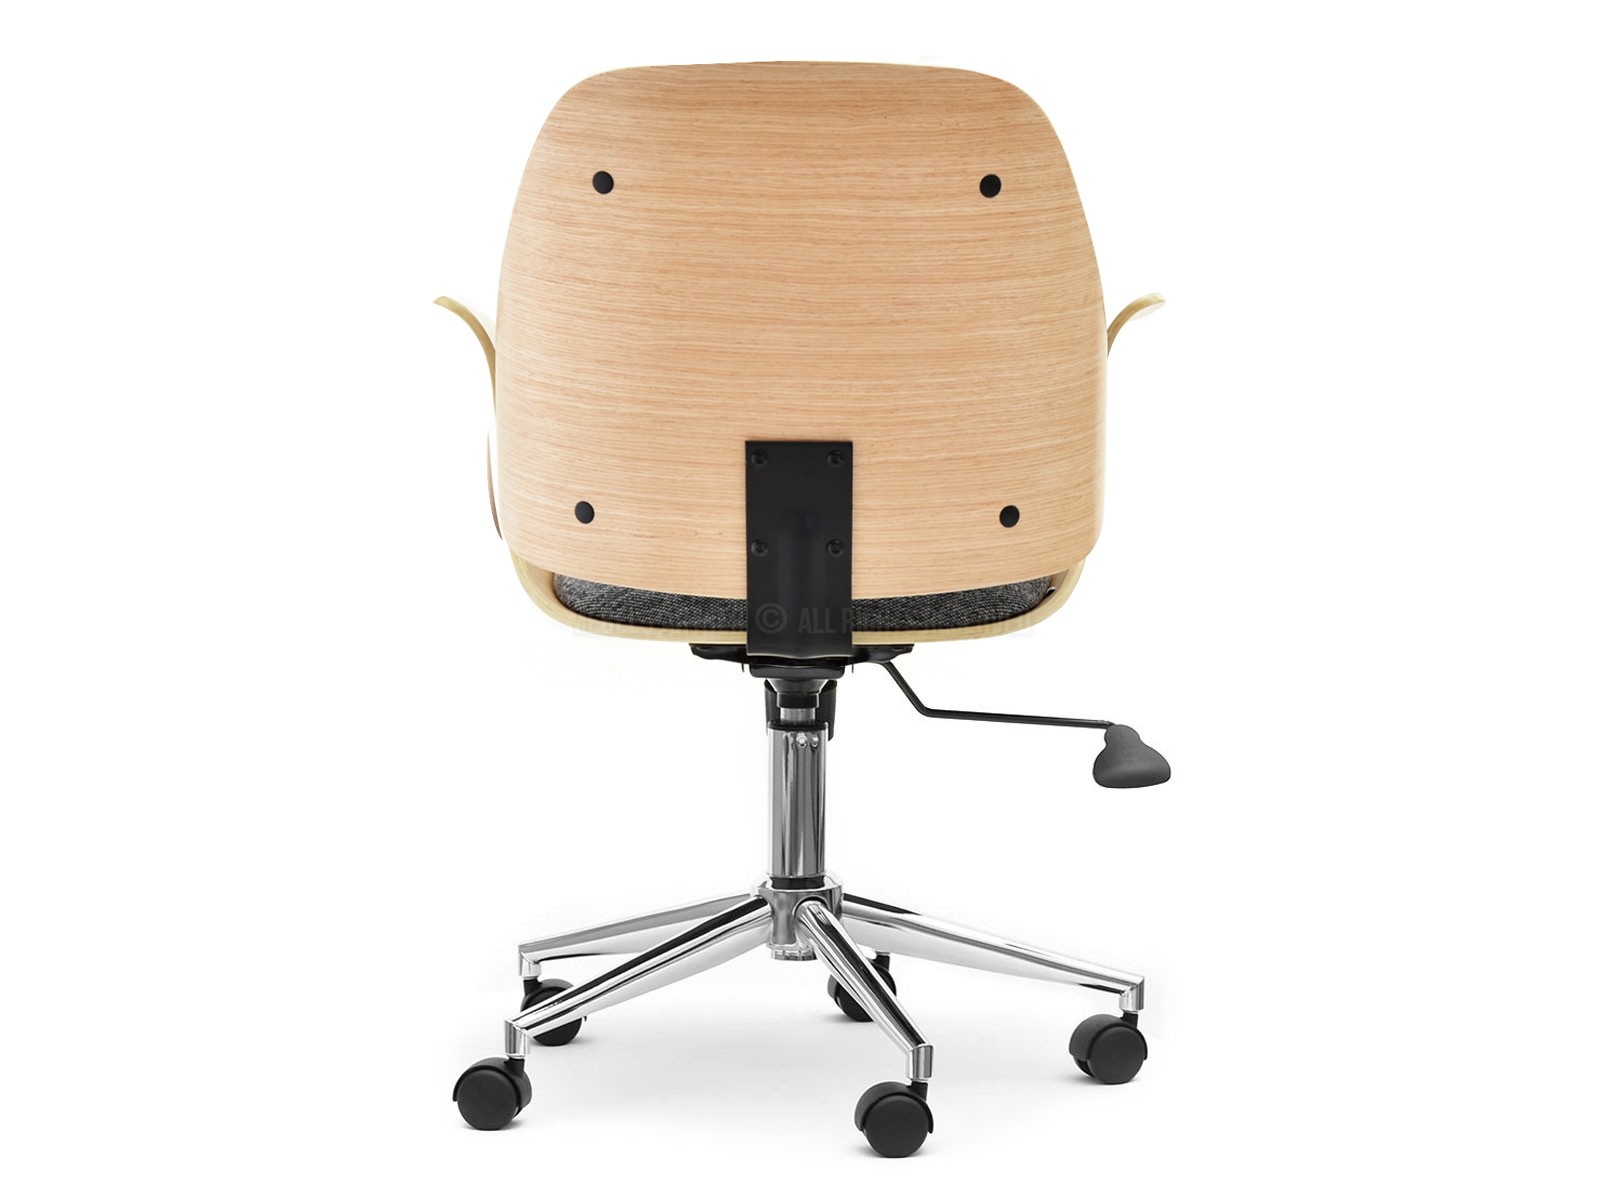 Fotel biurowy drewniany ENRIC DĄB z szarą tkaniną cowboy - charakterystyczne detale